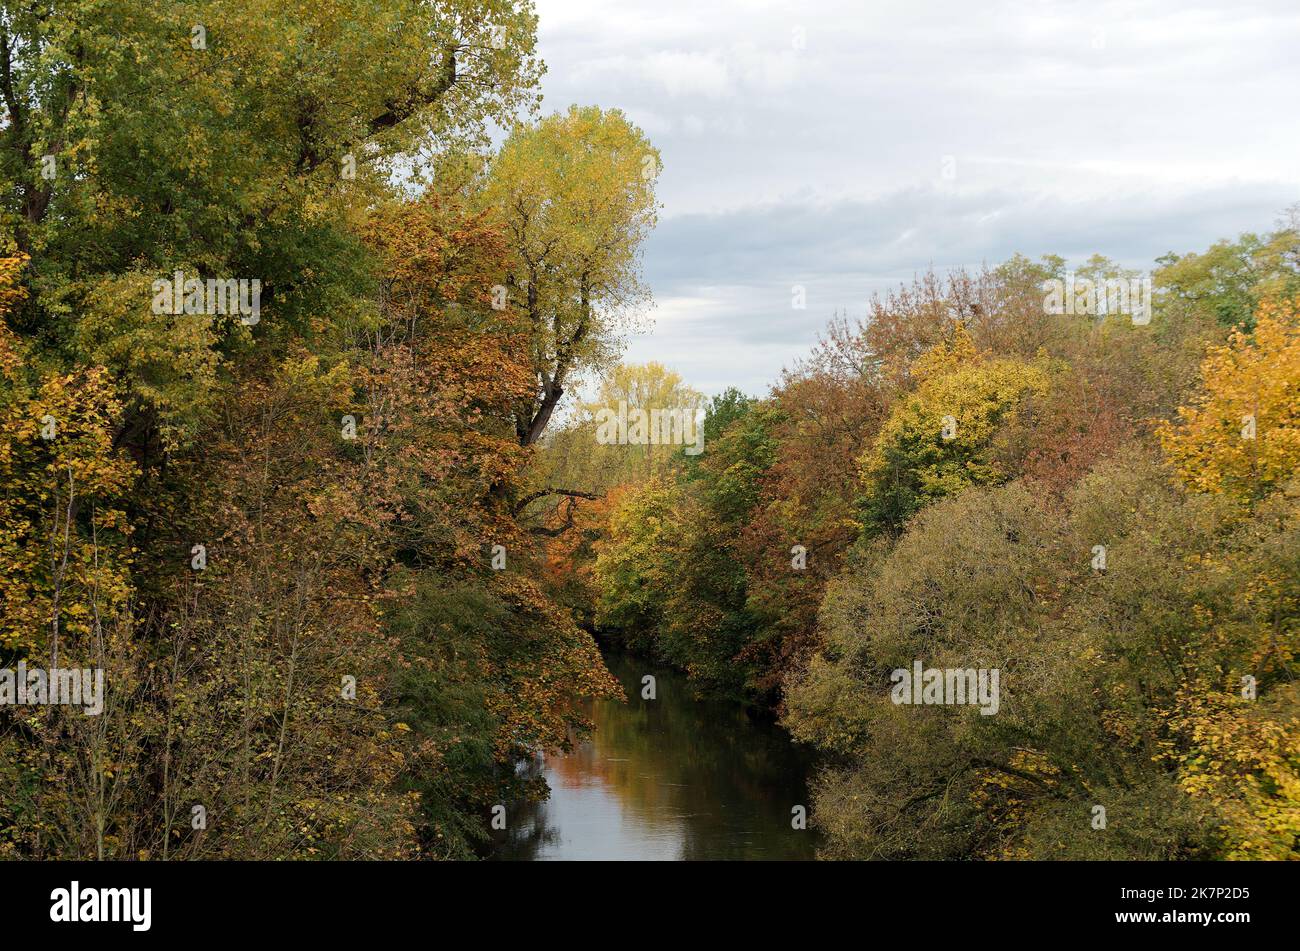 Ambiance d'automne, couleurs automnales sur les arbres le long d'une rivière Banque D'Images